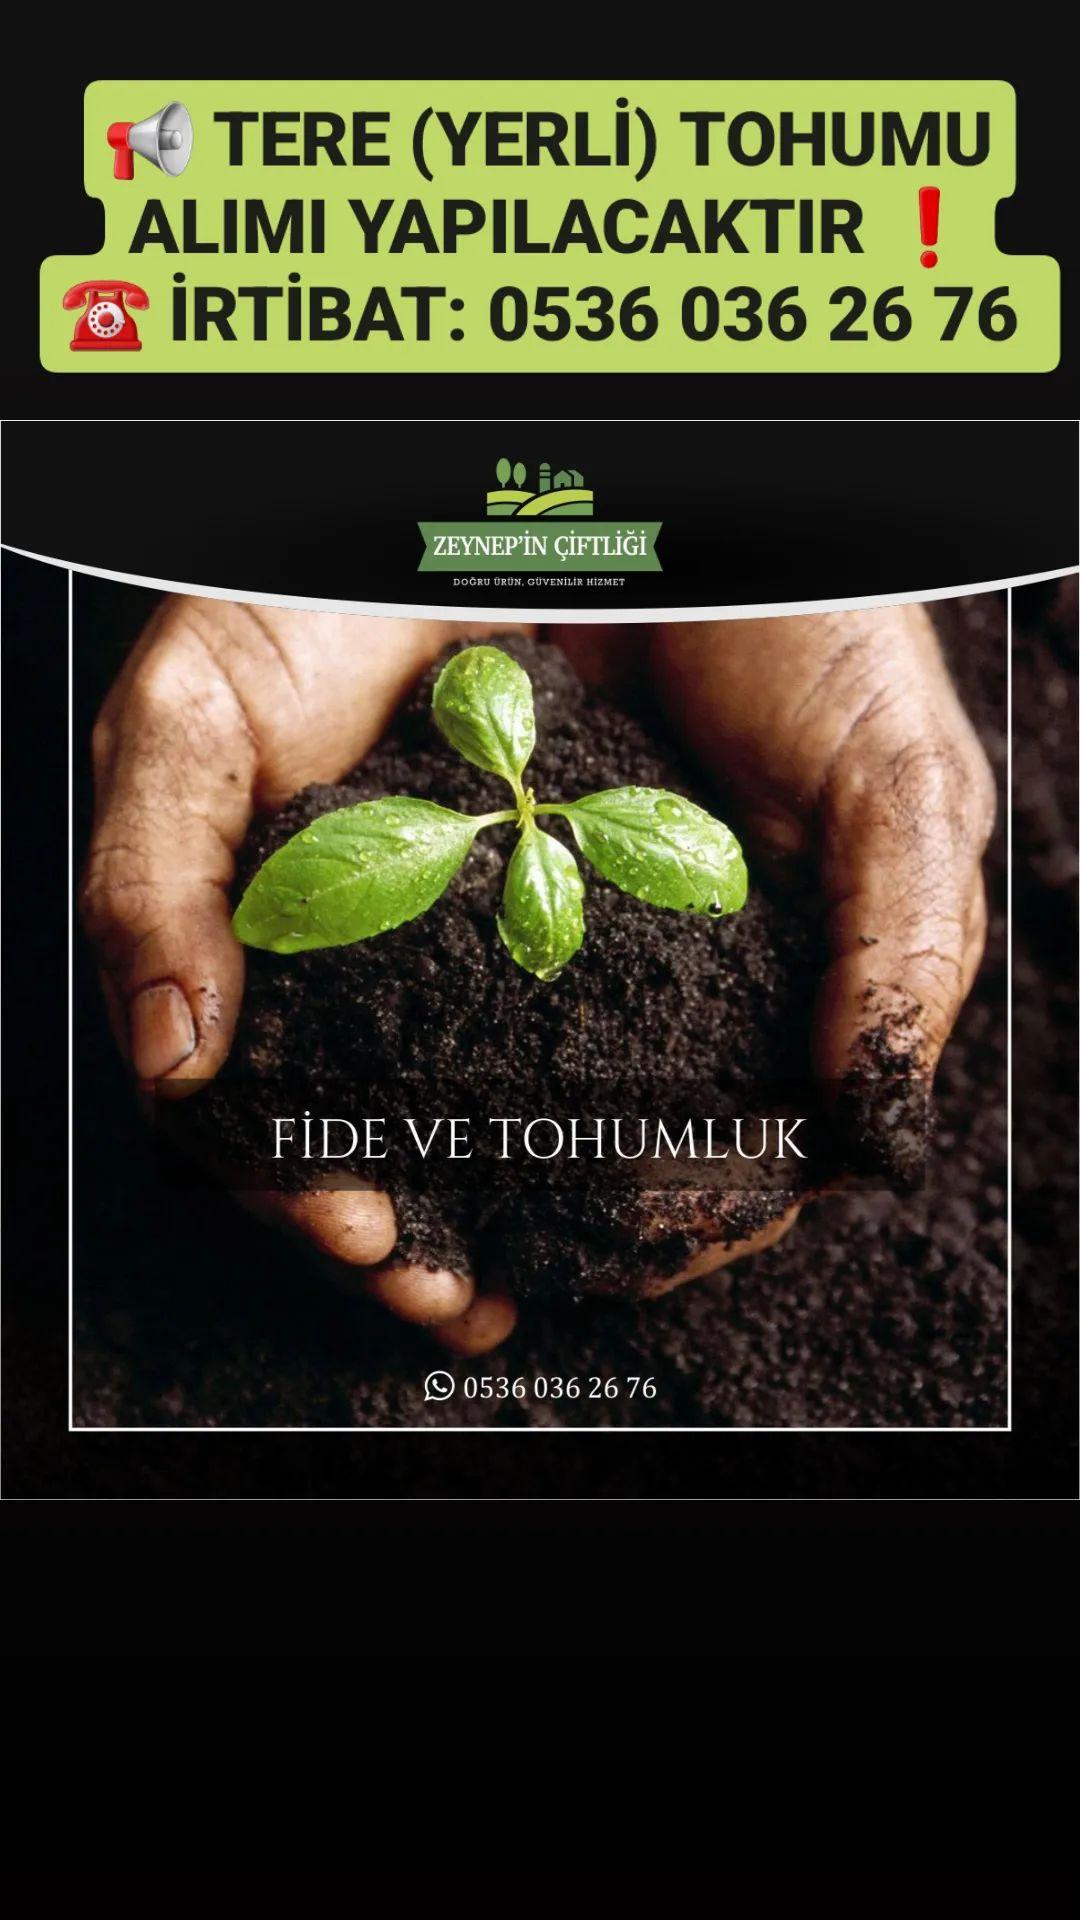 Tere tohumu - Zeynep'in Çiftliği tarafından verilen tere tohumu alım ilanını ve diğer tere tohumu alım ilanlarını tarimziraat.com adresinde bulabilirsiniz